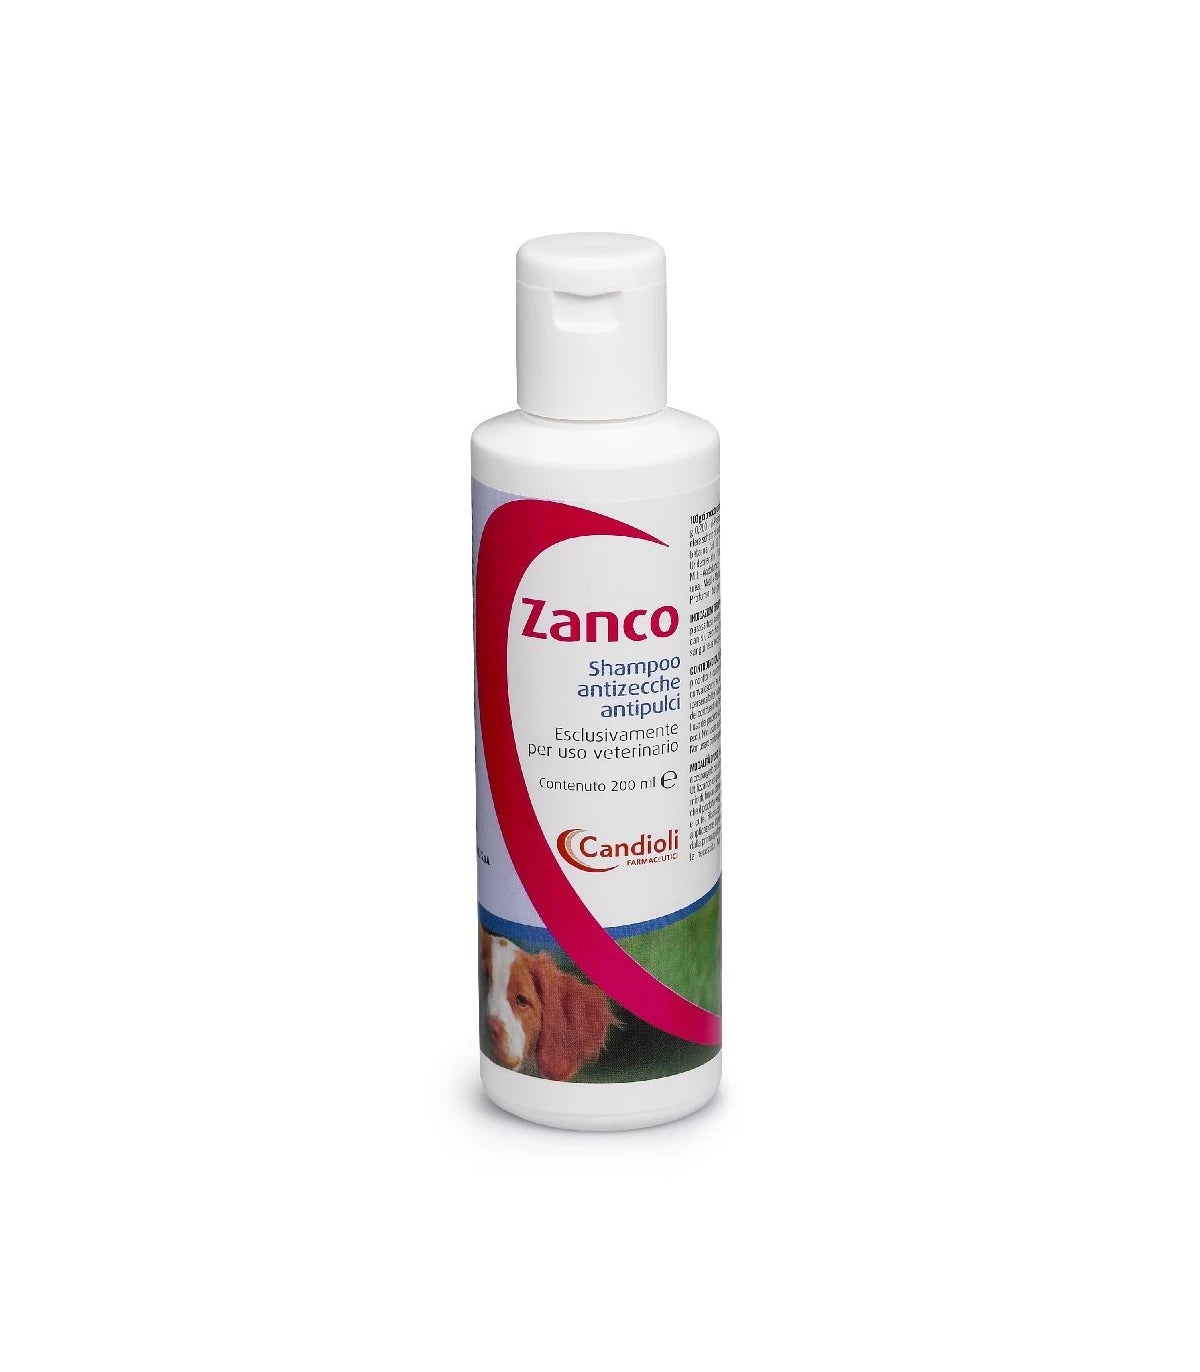 ZANCO SHAMPOO 200ml - Shampoo Antiparassitario Per Cane